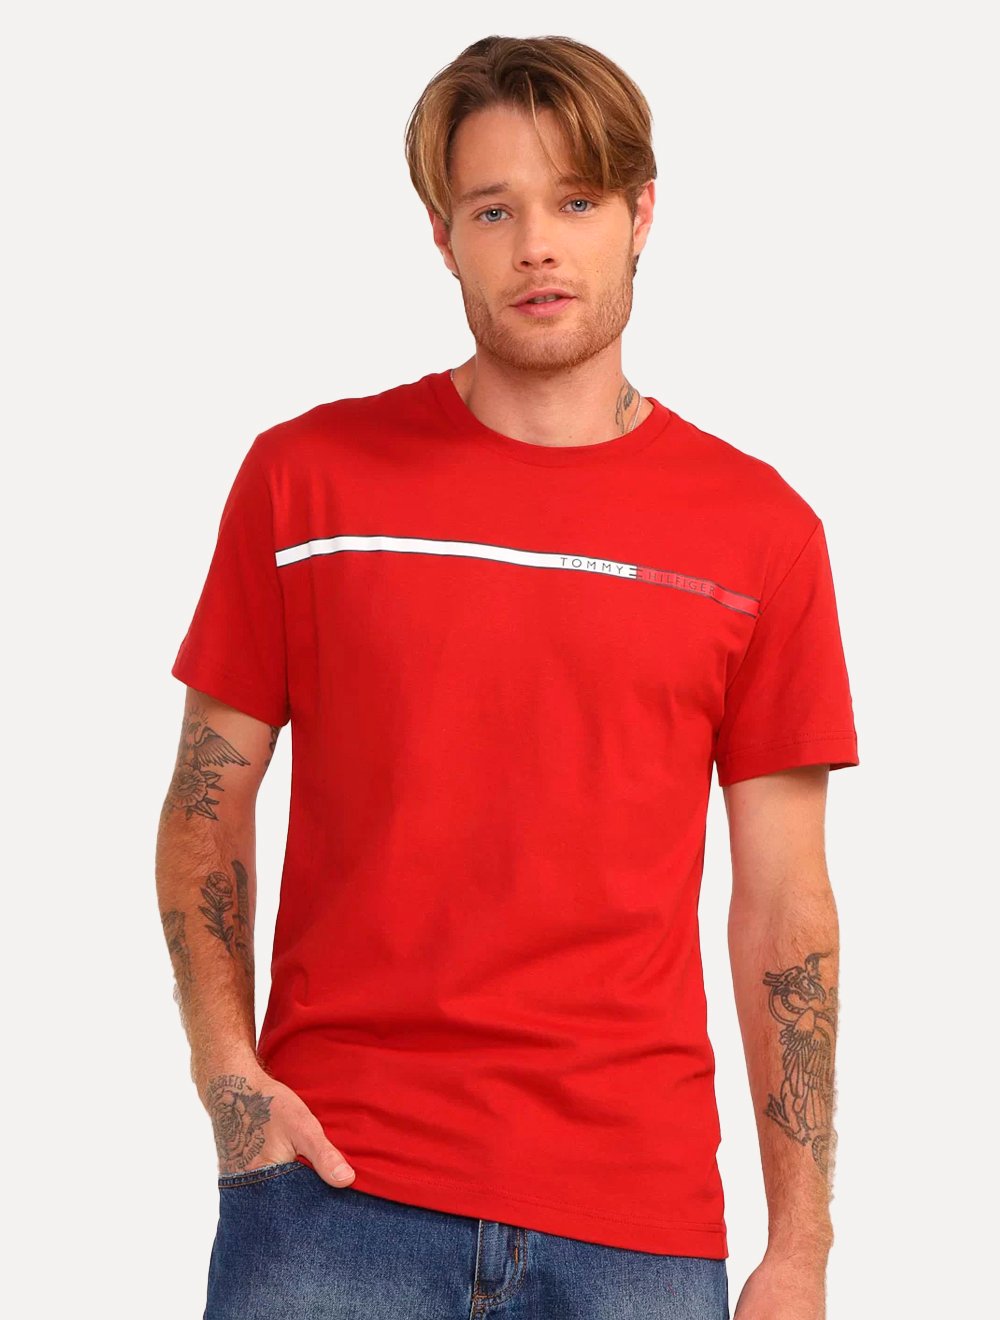 Camiseta Tommy Hilfiger Vermelha (frente e costas)